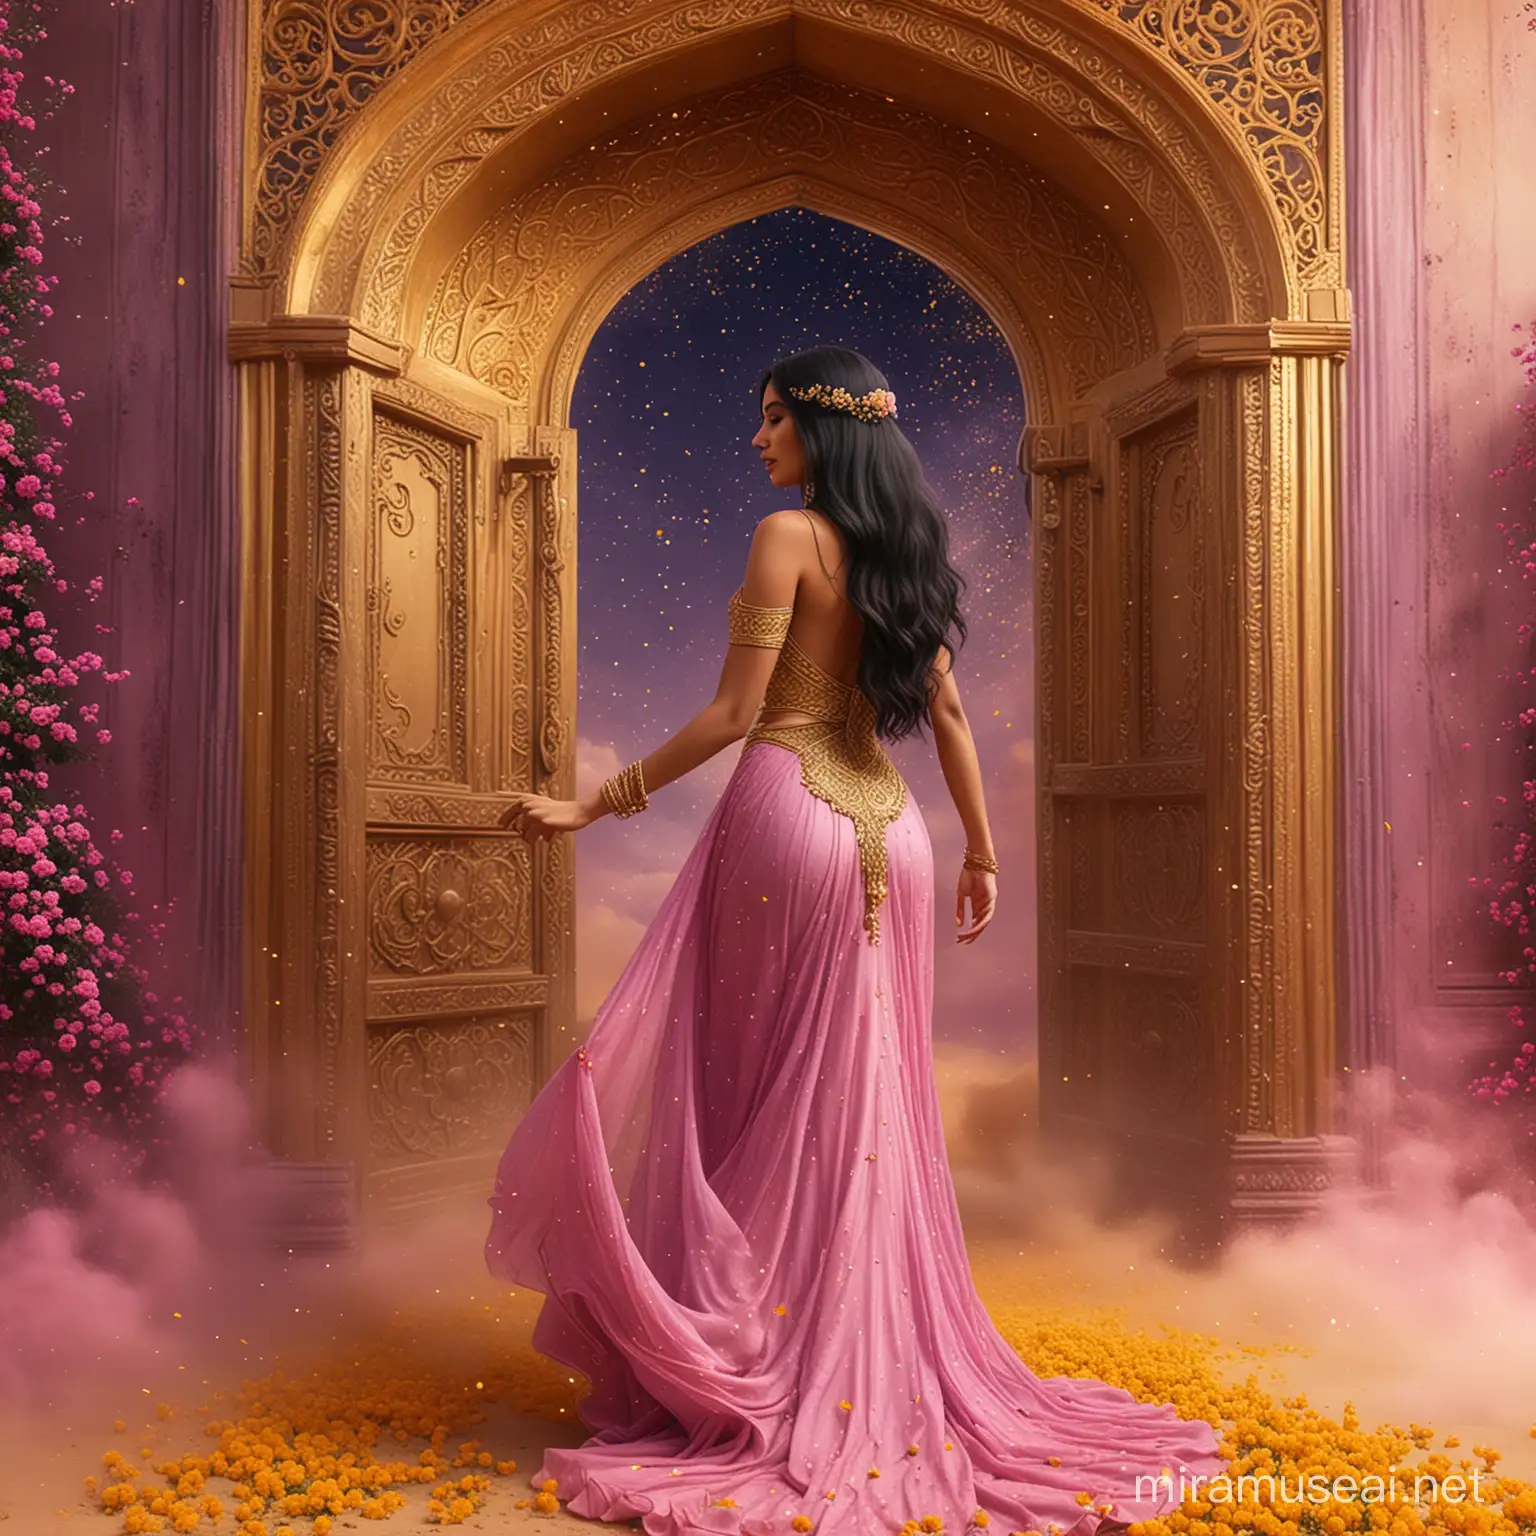 Elegant Woman Standing Under Opened Golden Arabian Door in Fantasy Nebula